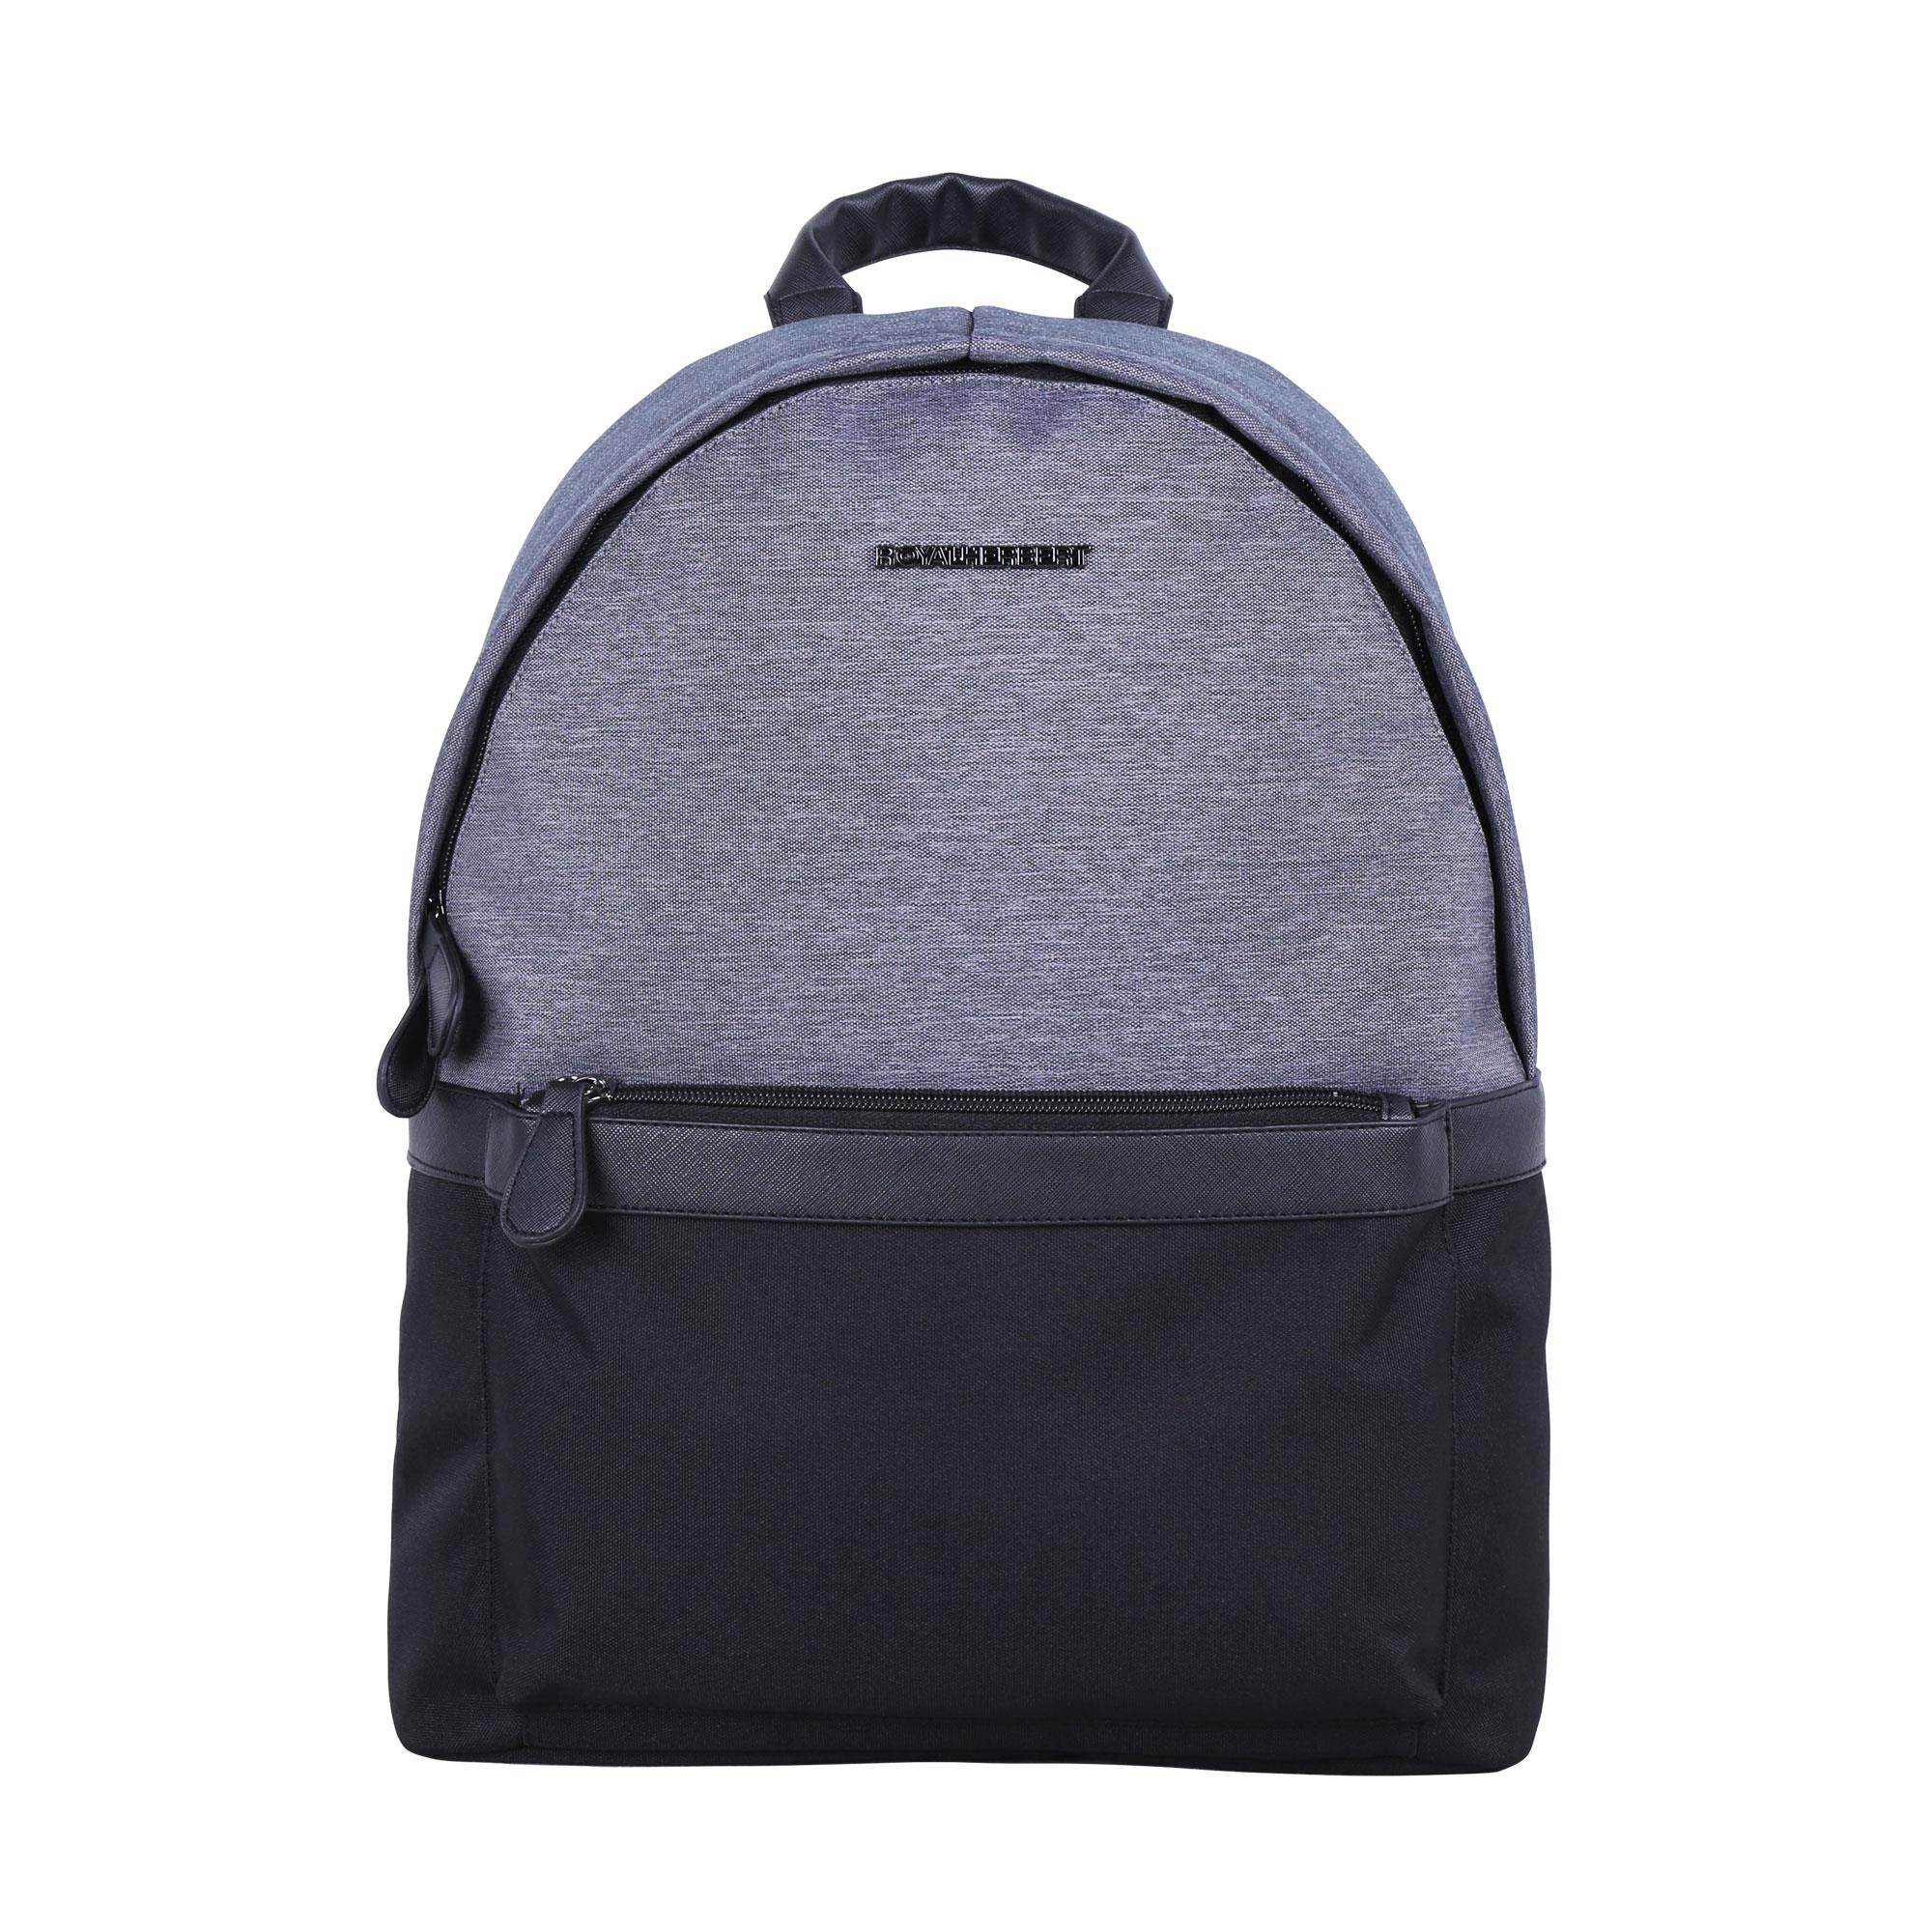 OEM Customized Hot Selling Backpack -
 B1069-005 Melange – Herbert